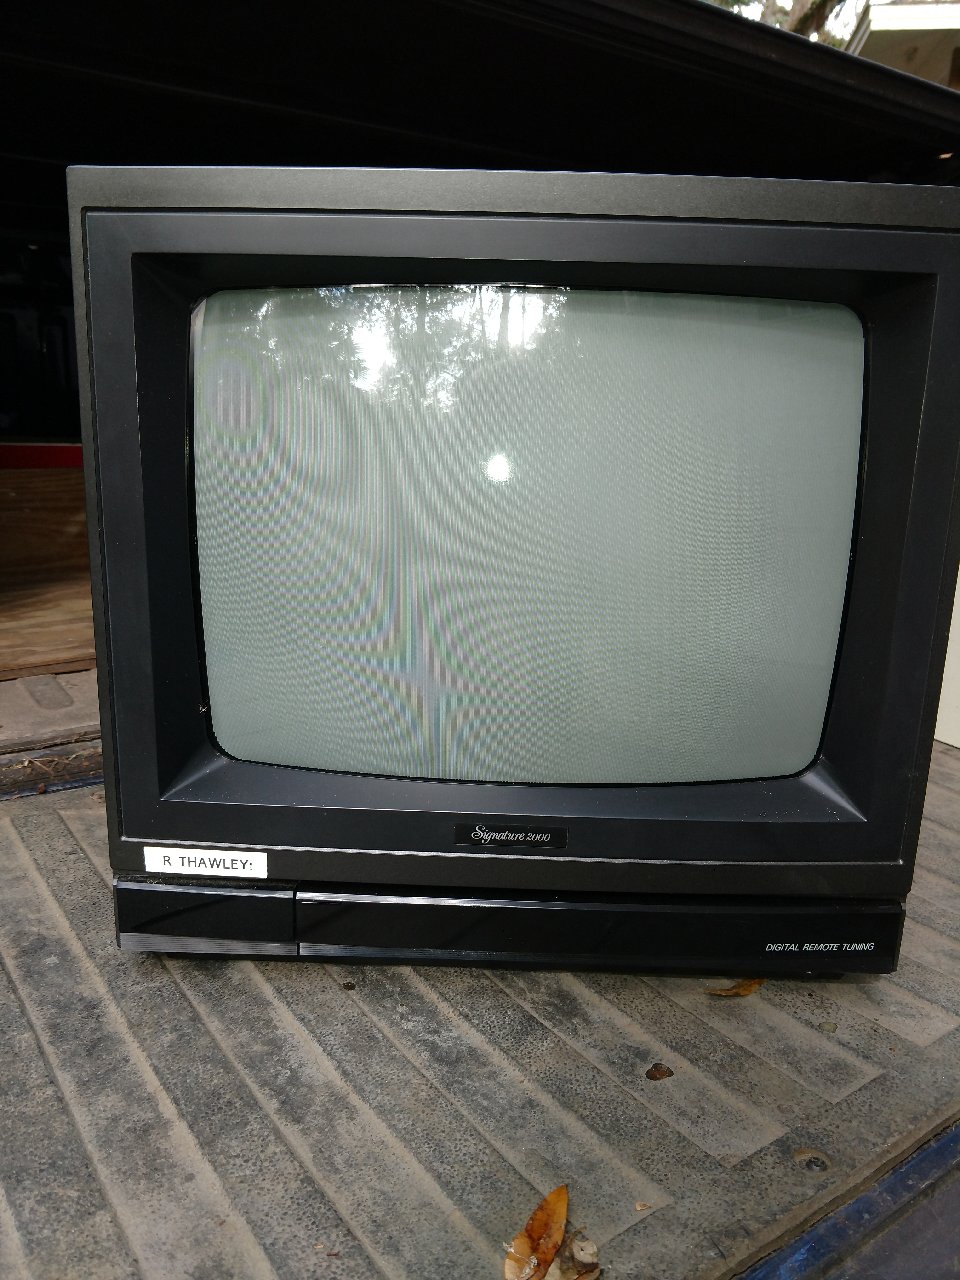 19 inch Ward's TV-Thawley.jpg